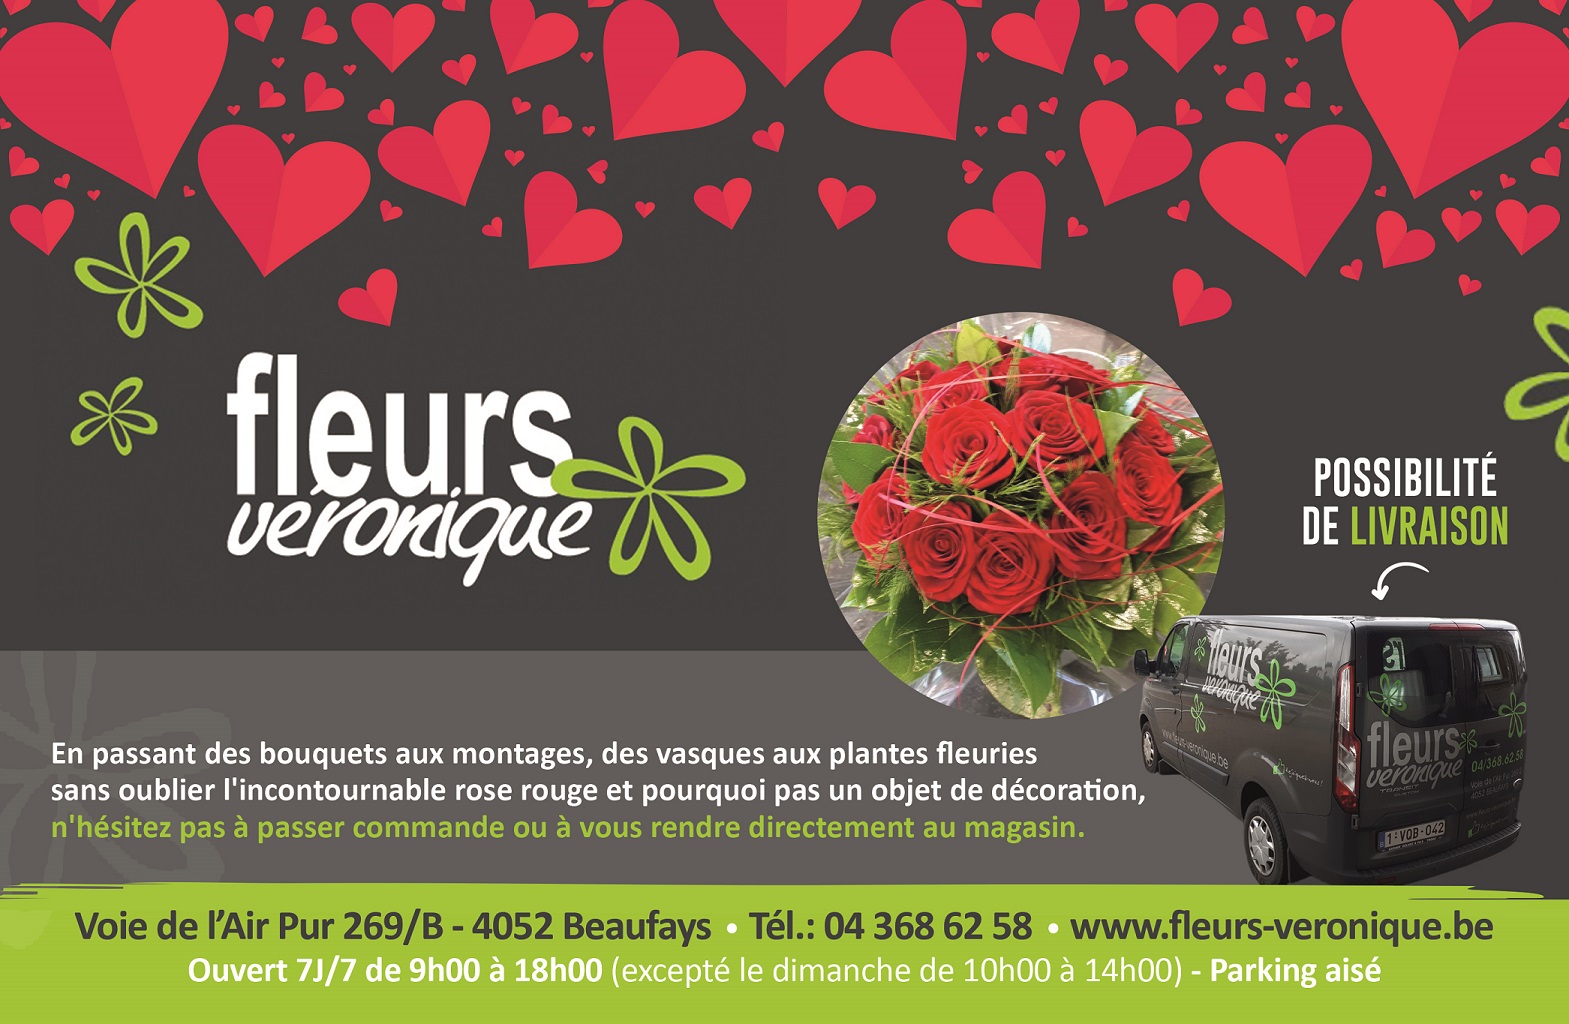 Saint-Valentin, Beaufays, Roses rouges, Livraisons, Créations florales 